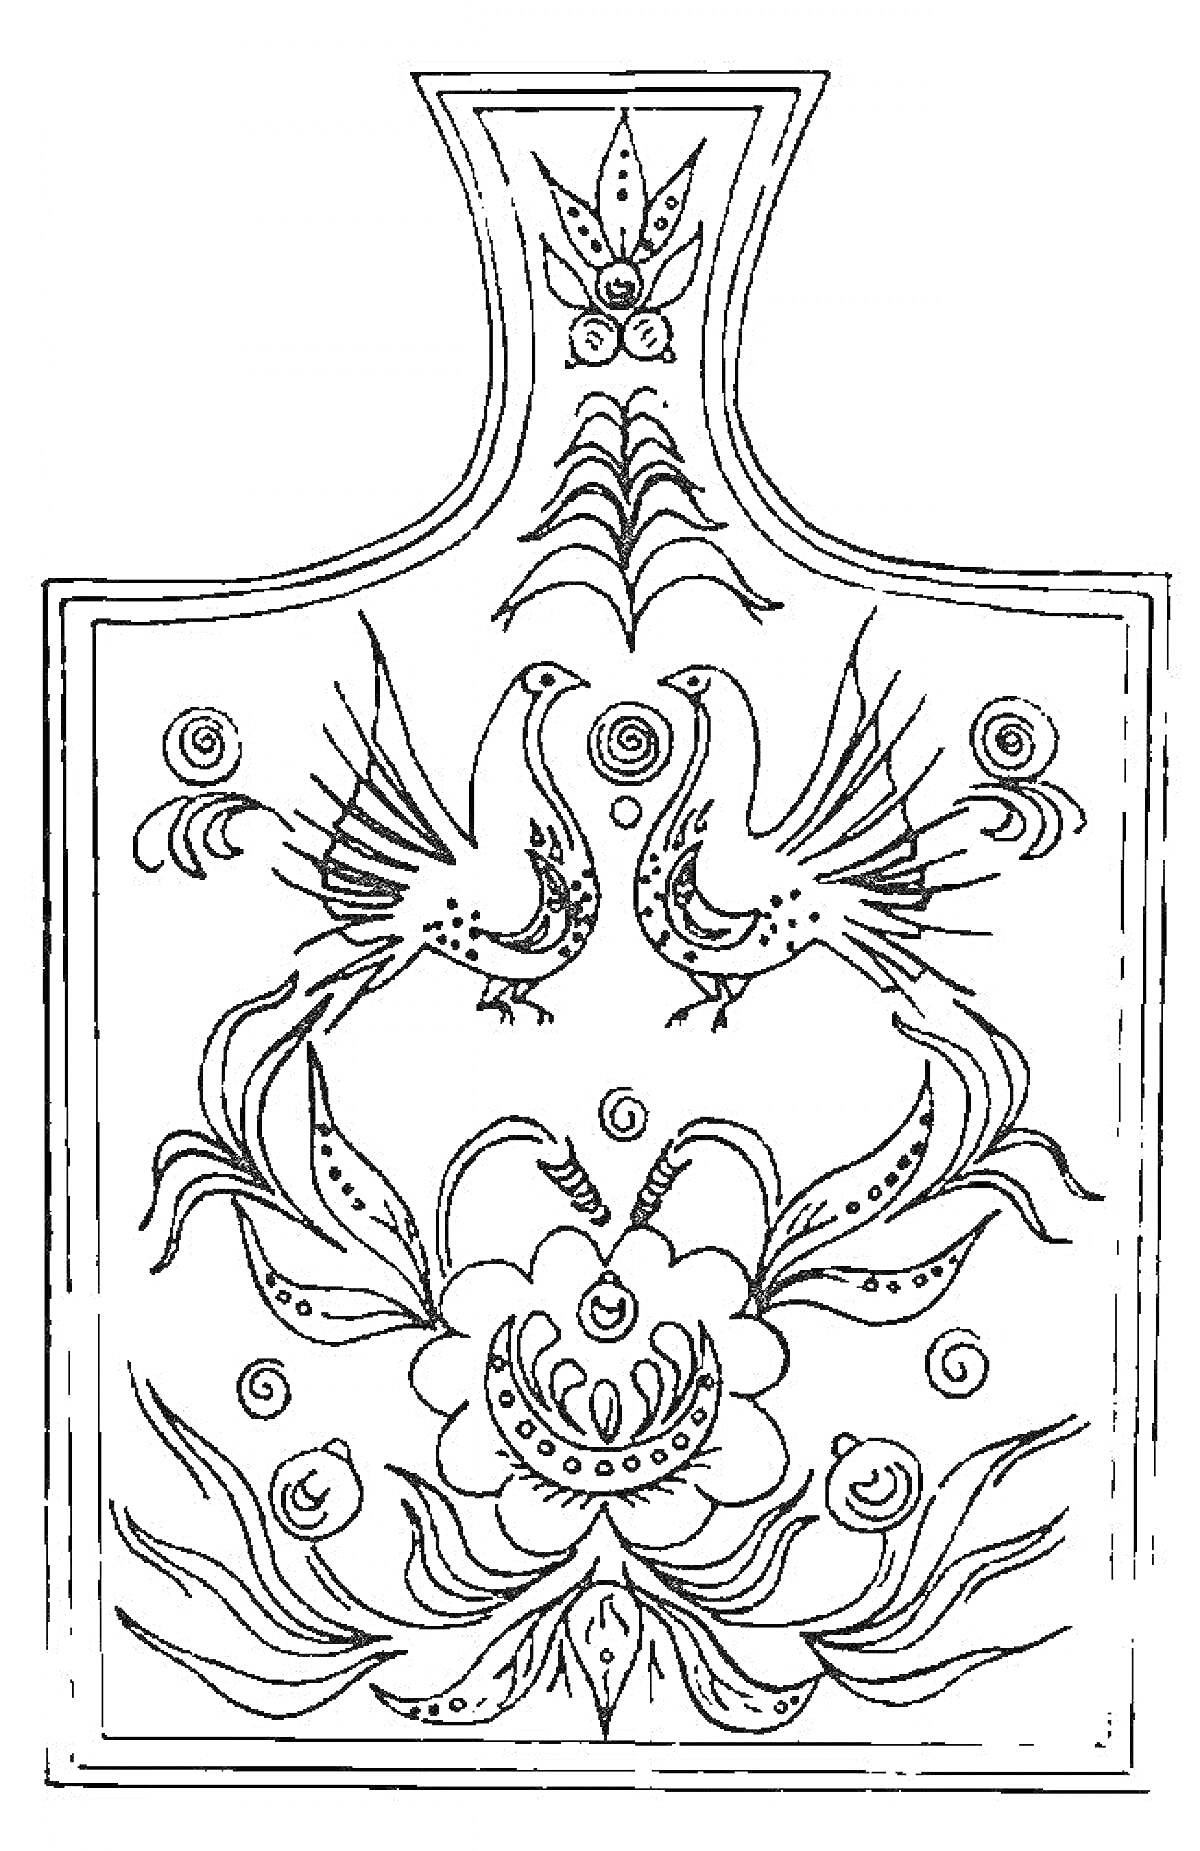 Раскраска Городецкая роспись: два петуха, цветок, листва и спирали